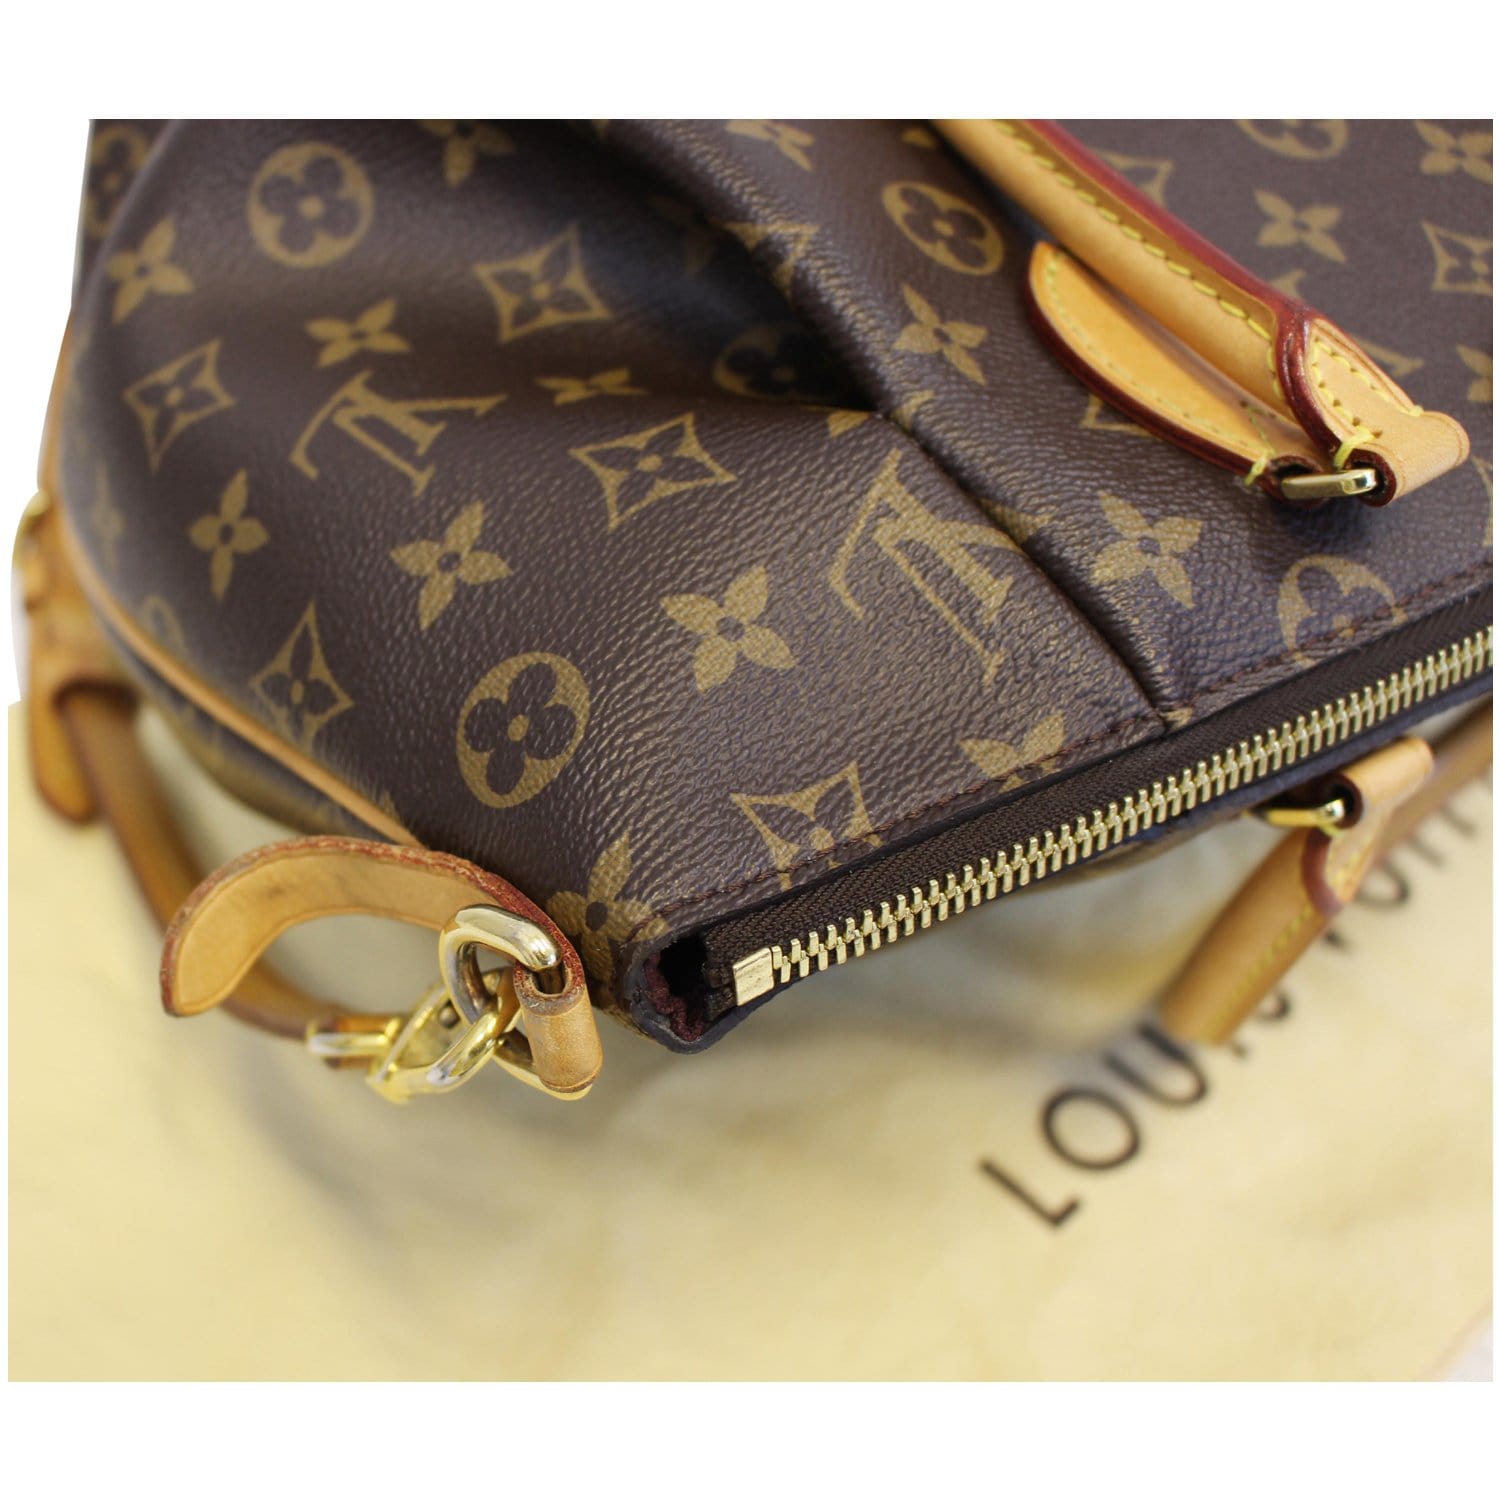 Louis Vuitton Monogram Turenne MM Shoulder Bag or Satchel - A World Of  Goods For You, LLC